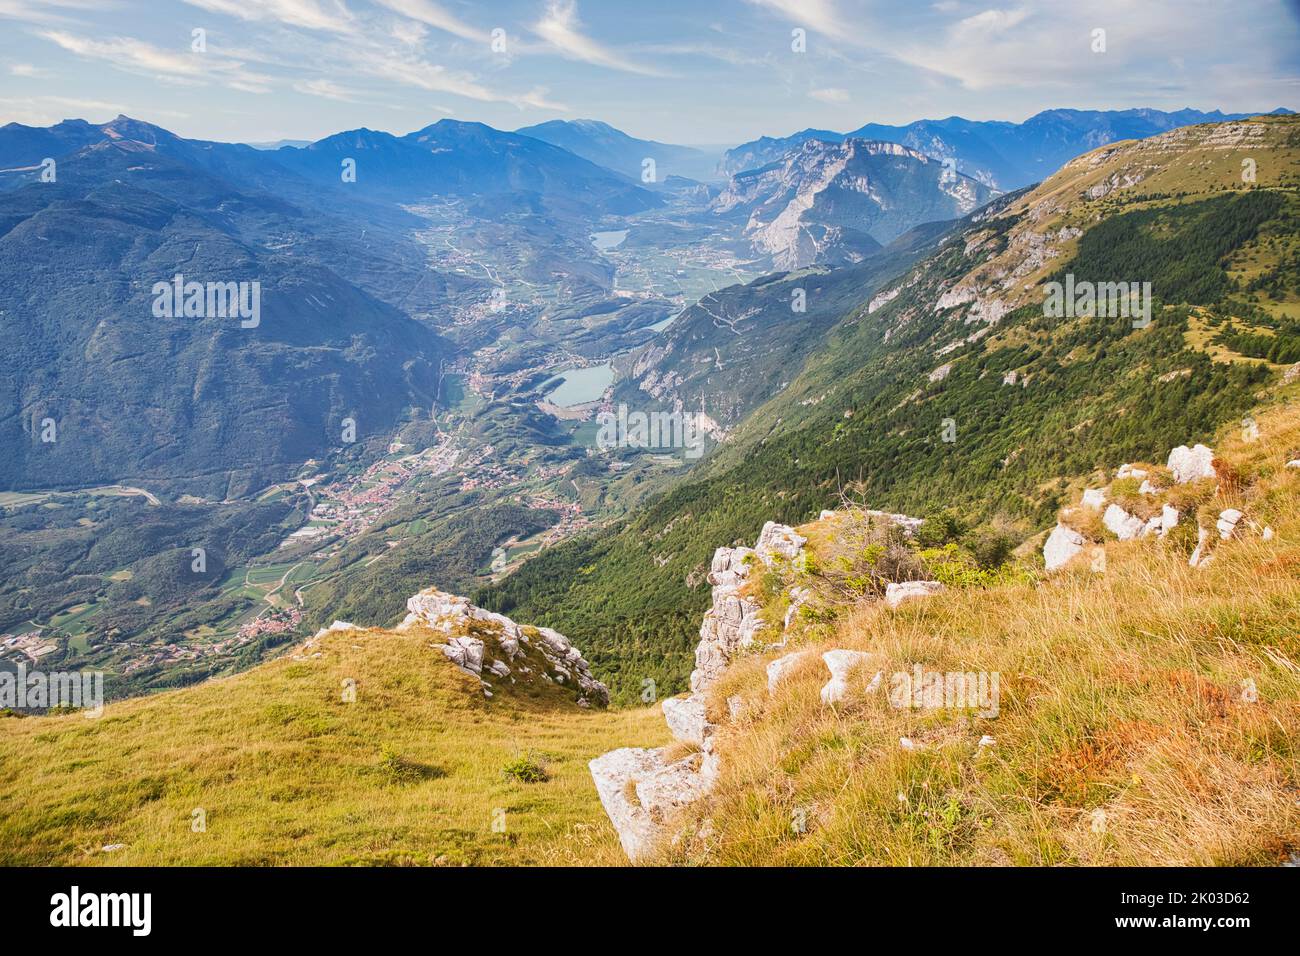 Italien, Trentino, Trient, Gemeinde Vallelaghi. Erhöhter Blick auf das Valle dei Laghi, sub-alpines Seengebiet zwischen Gardasee und Trient Stockfoto